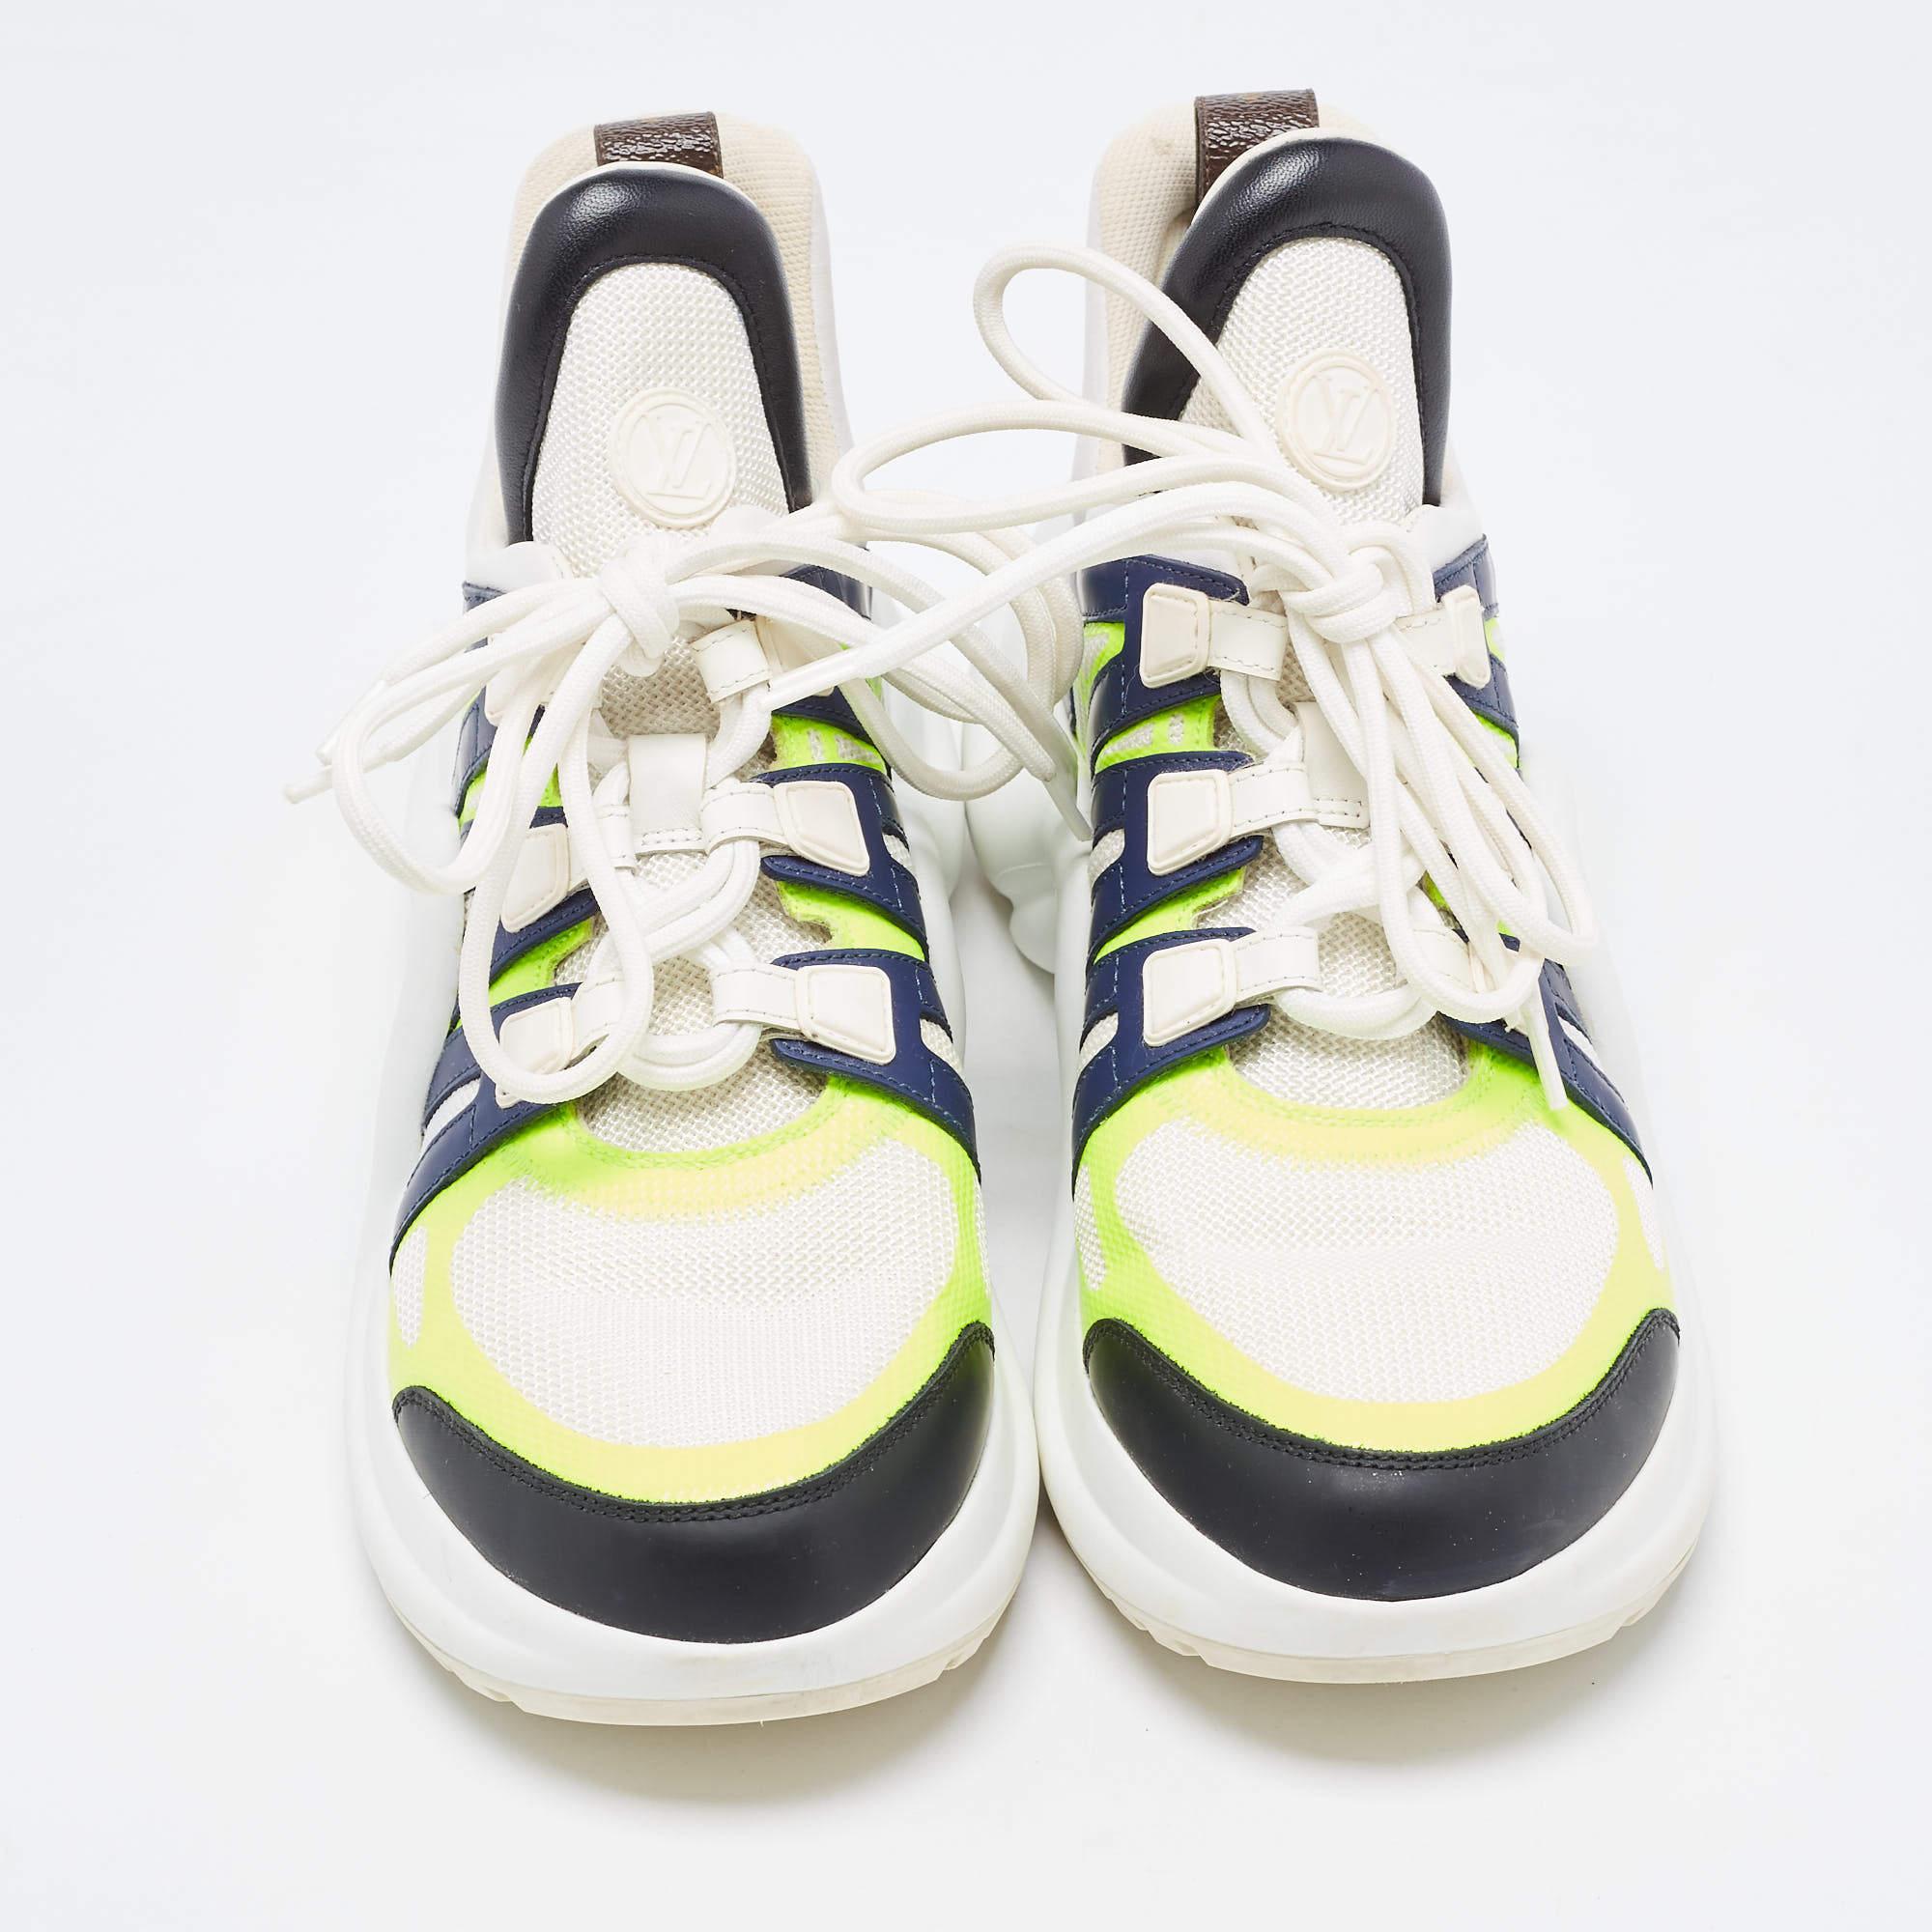 Aktualisieren Sie Ihren Stil mit diesen LV Archlight Sneakers. Sie sind die ideale Wahl für einen trendigen und bequemen Gang. Sie sind sorgfältig auf Mode und Komfort abgestimmt.

Enthält: Original-Staubbeutel, Original-Box, Info-Booklet

